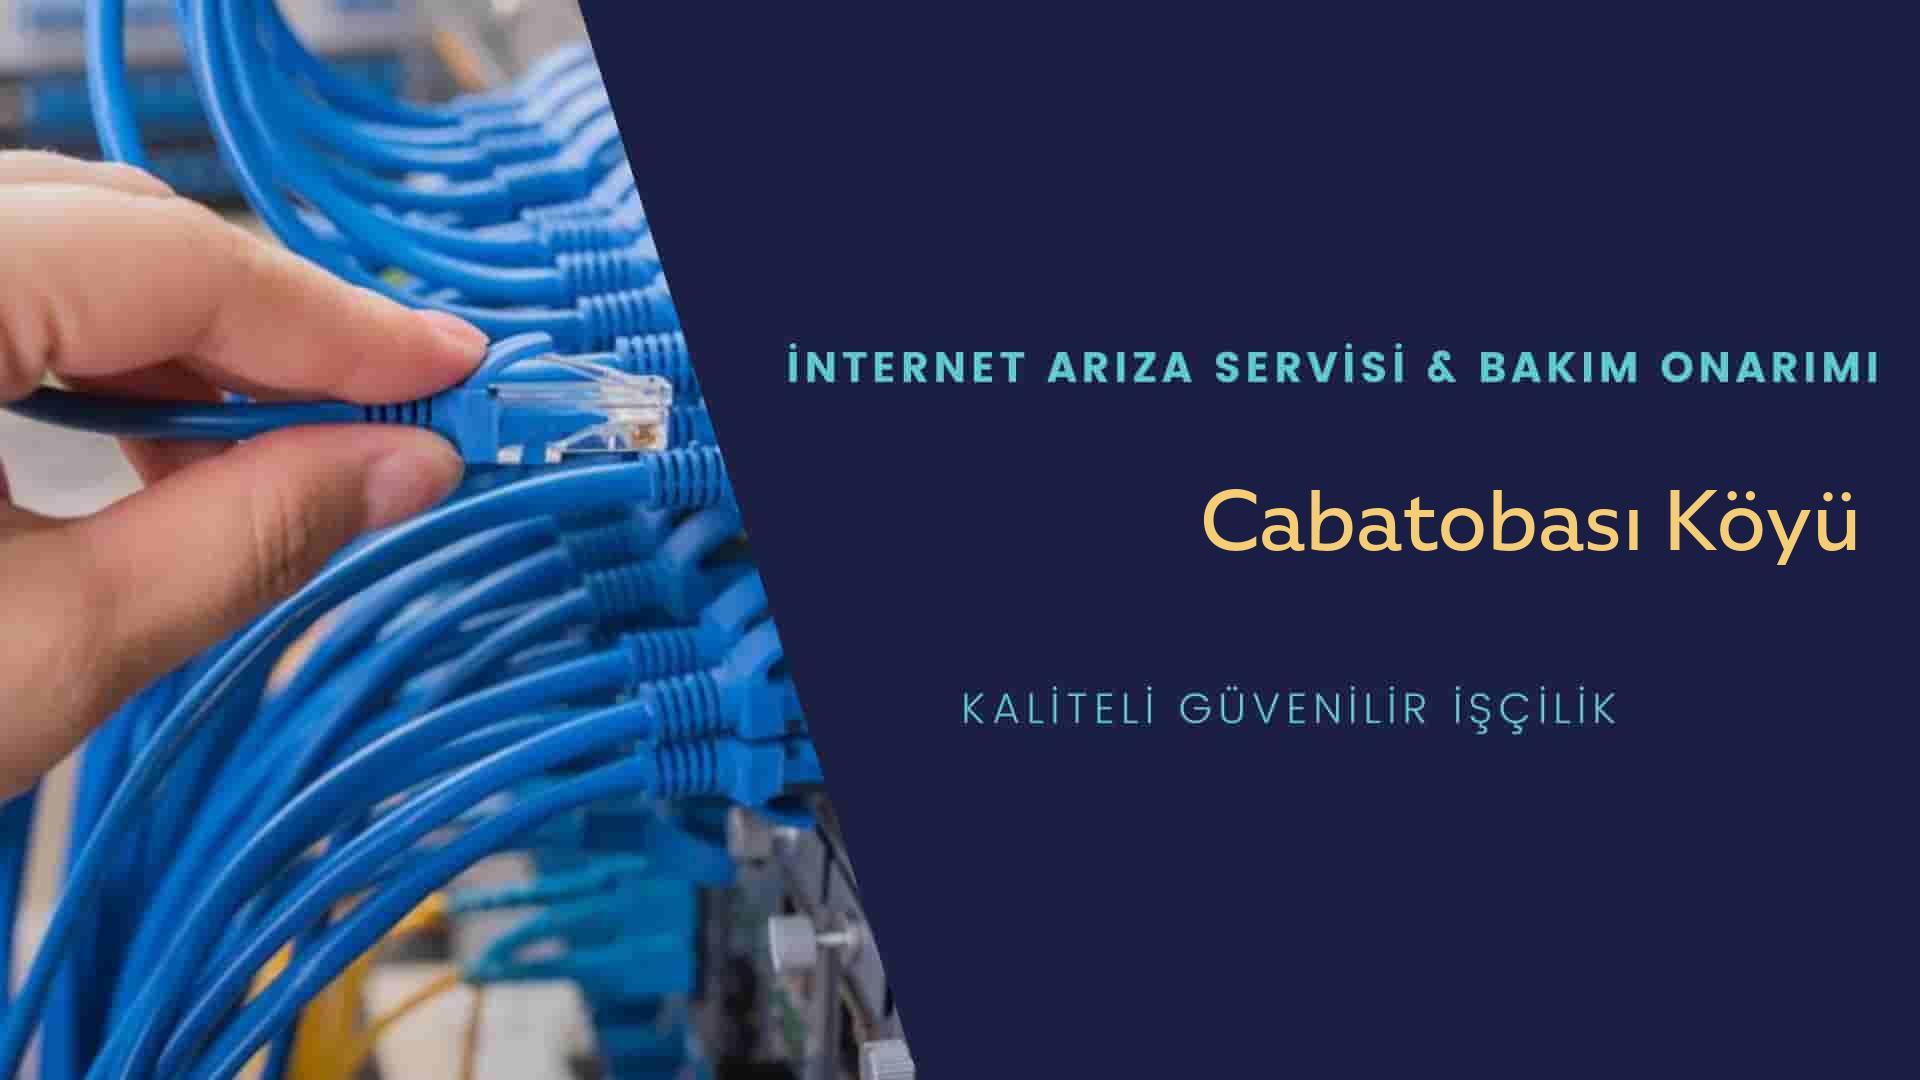 Cabatobası Köyü internet kablosu çekimi yapan yerler veya elektrikçiler mi? arıyorsunuz doğru yerdesiniz o zaman sizlere 7/24 yardımcı olacak profesyonel ustalarımız bir telefon kadar yakındır size.